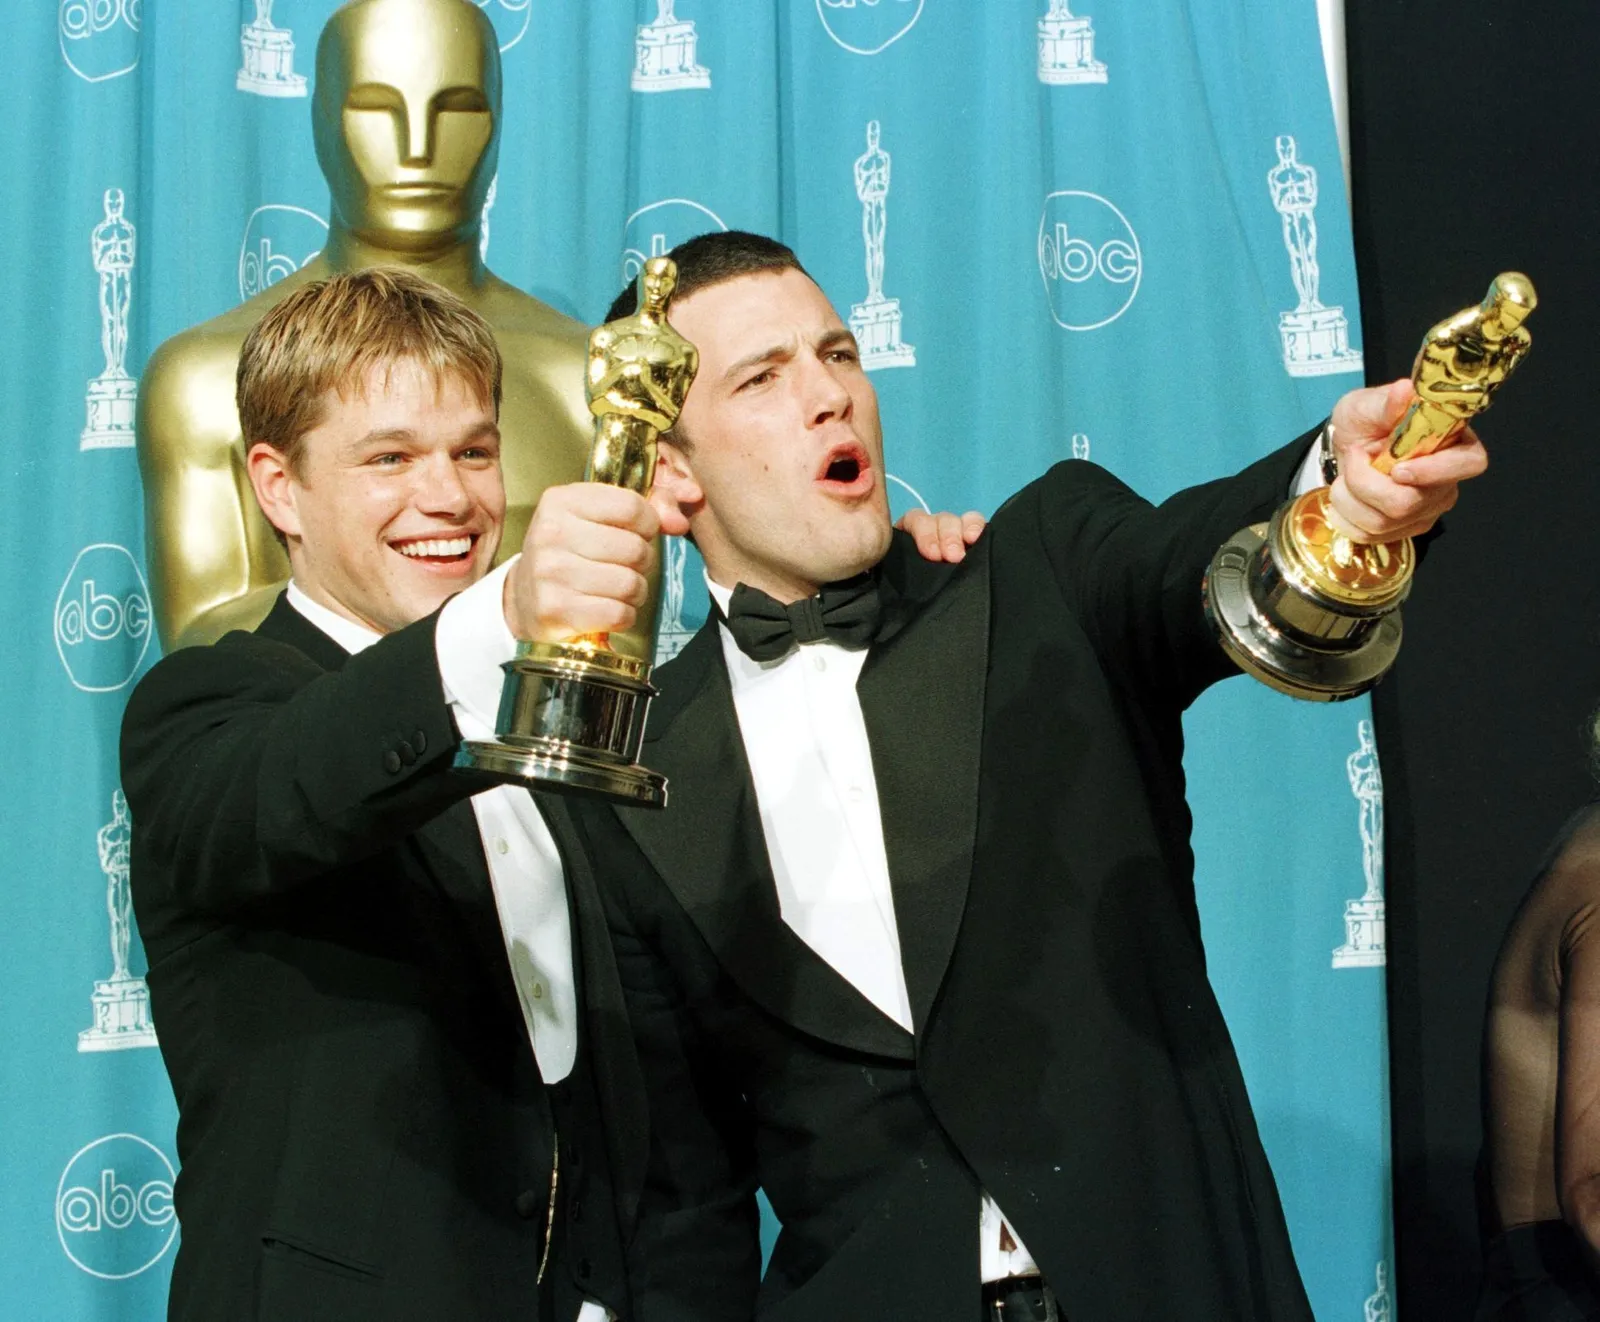 Después de varios años difíciles, Mstt Damon y Ben Affleck ganaron un Oscar en 1997 por Mejor Guión Original. 
Foto: Getty Images